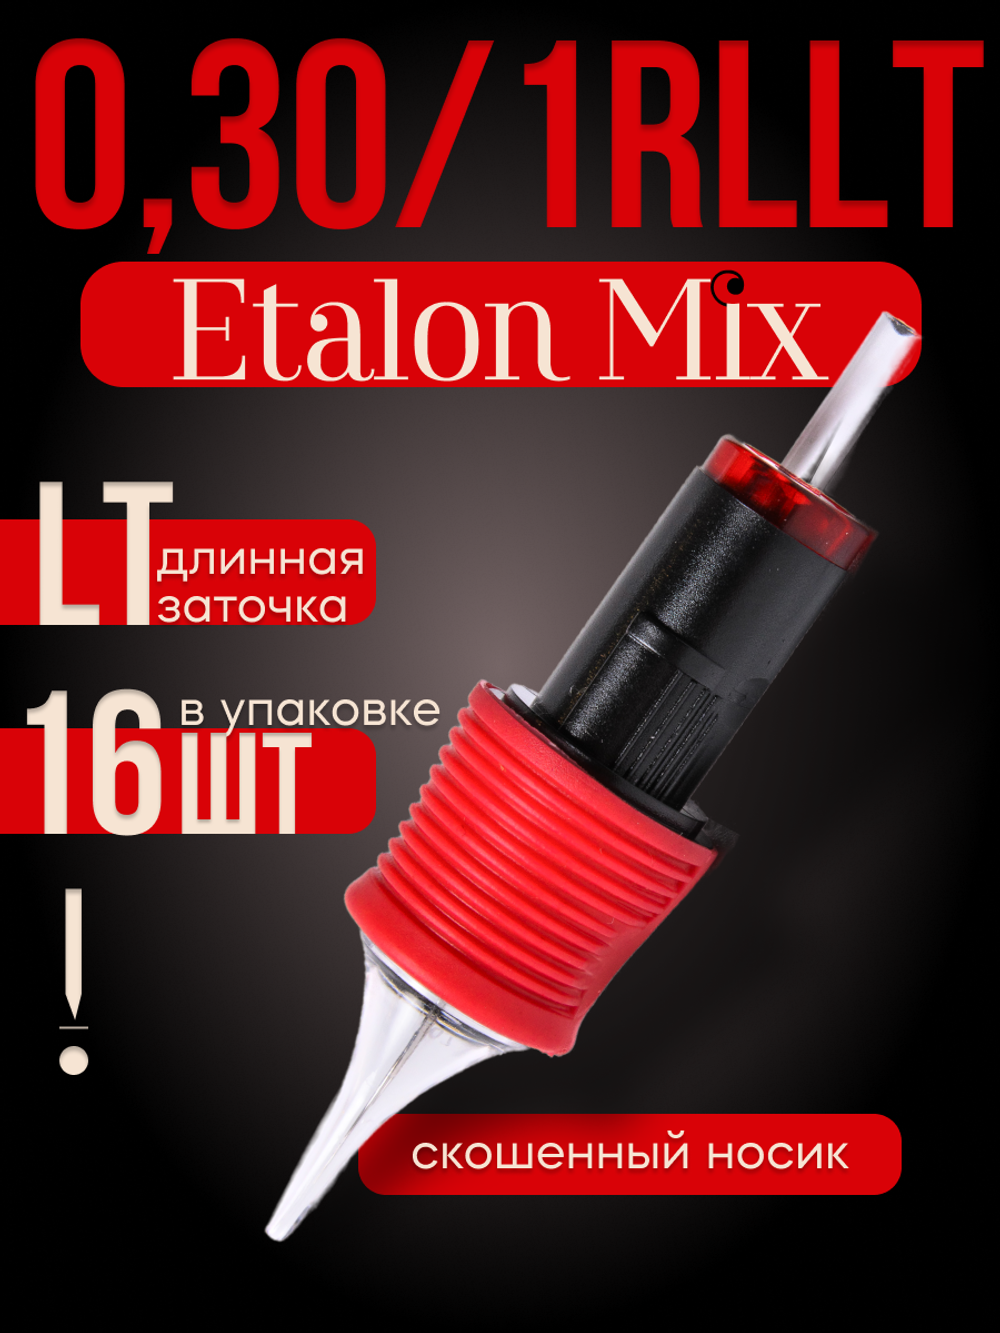 Картриджи для татуажа Etalon Mix 0.30/1RLLT 16 шт